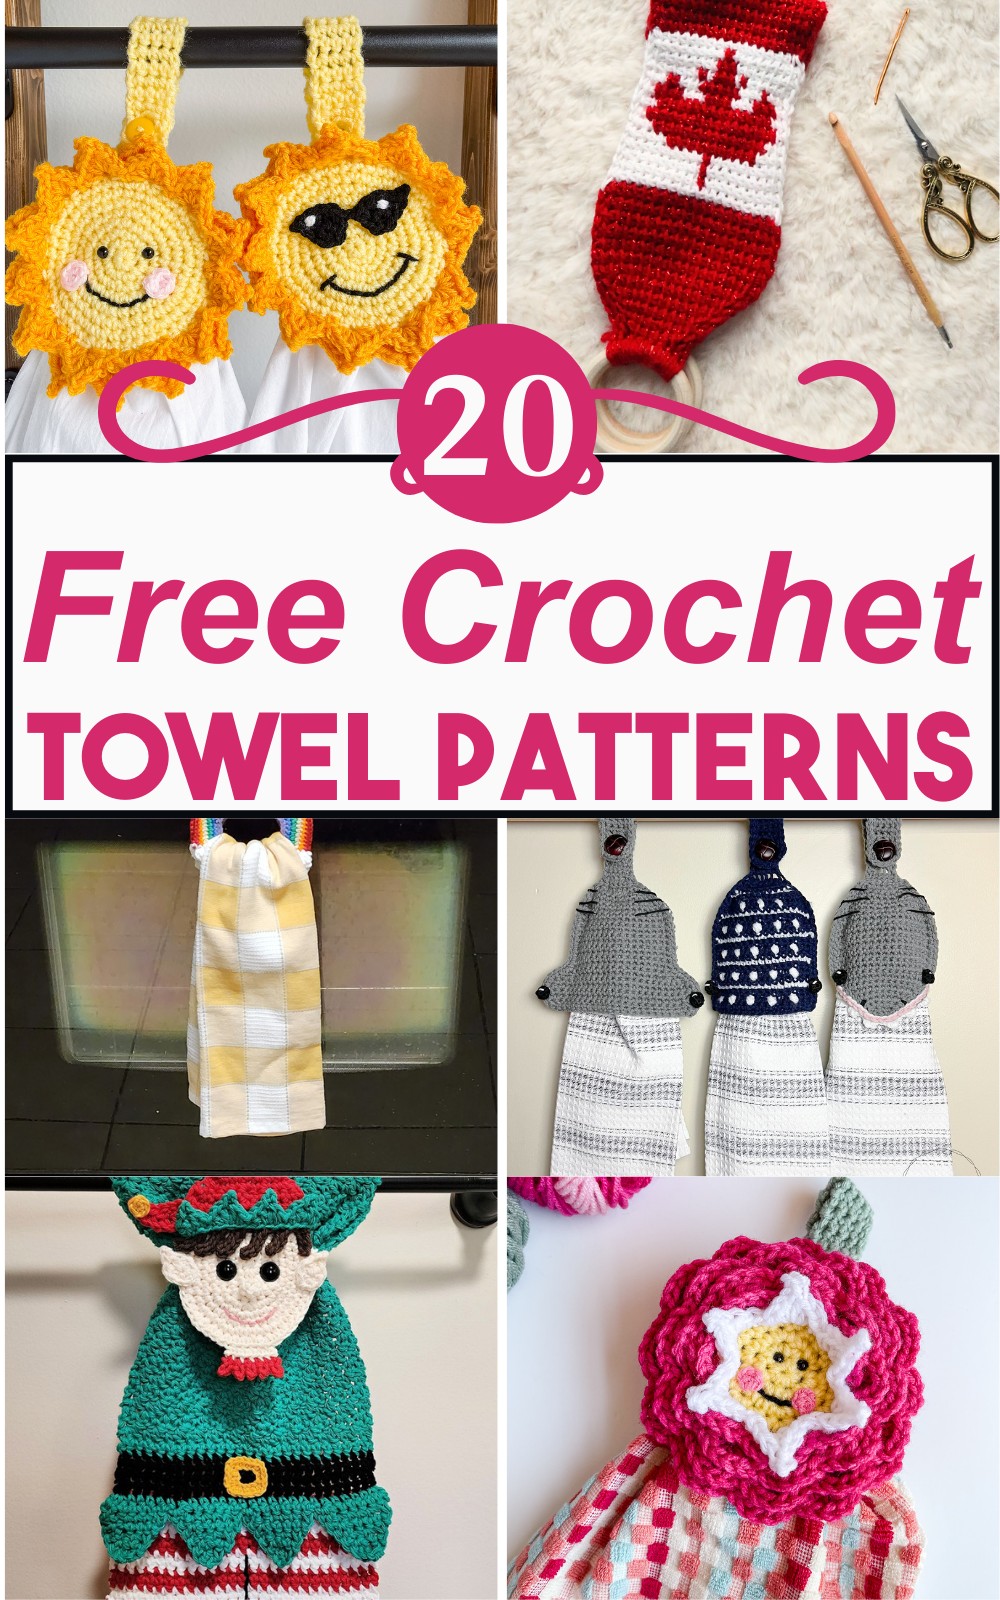 Free Crochet Towel Patterns